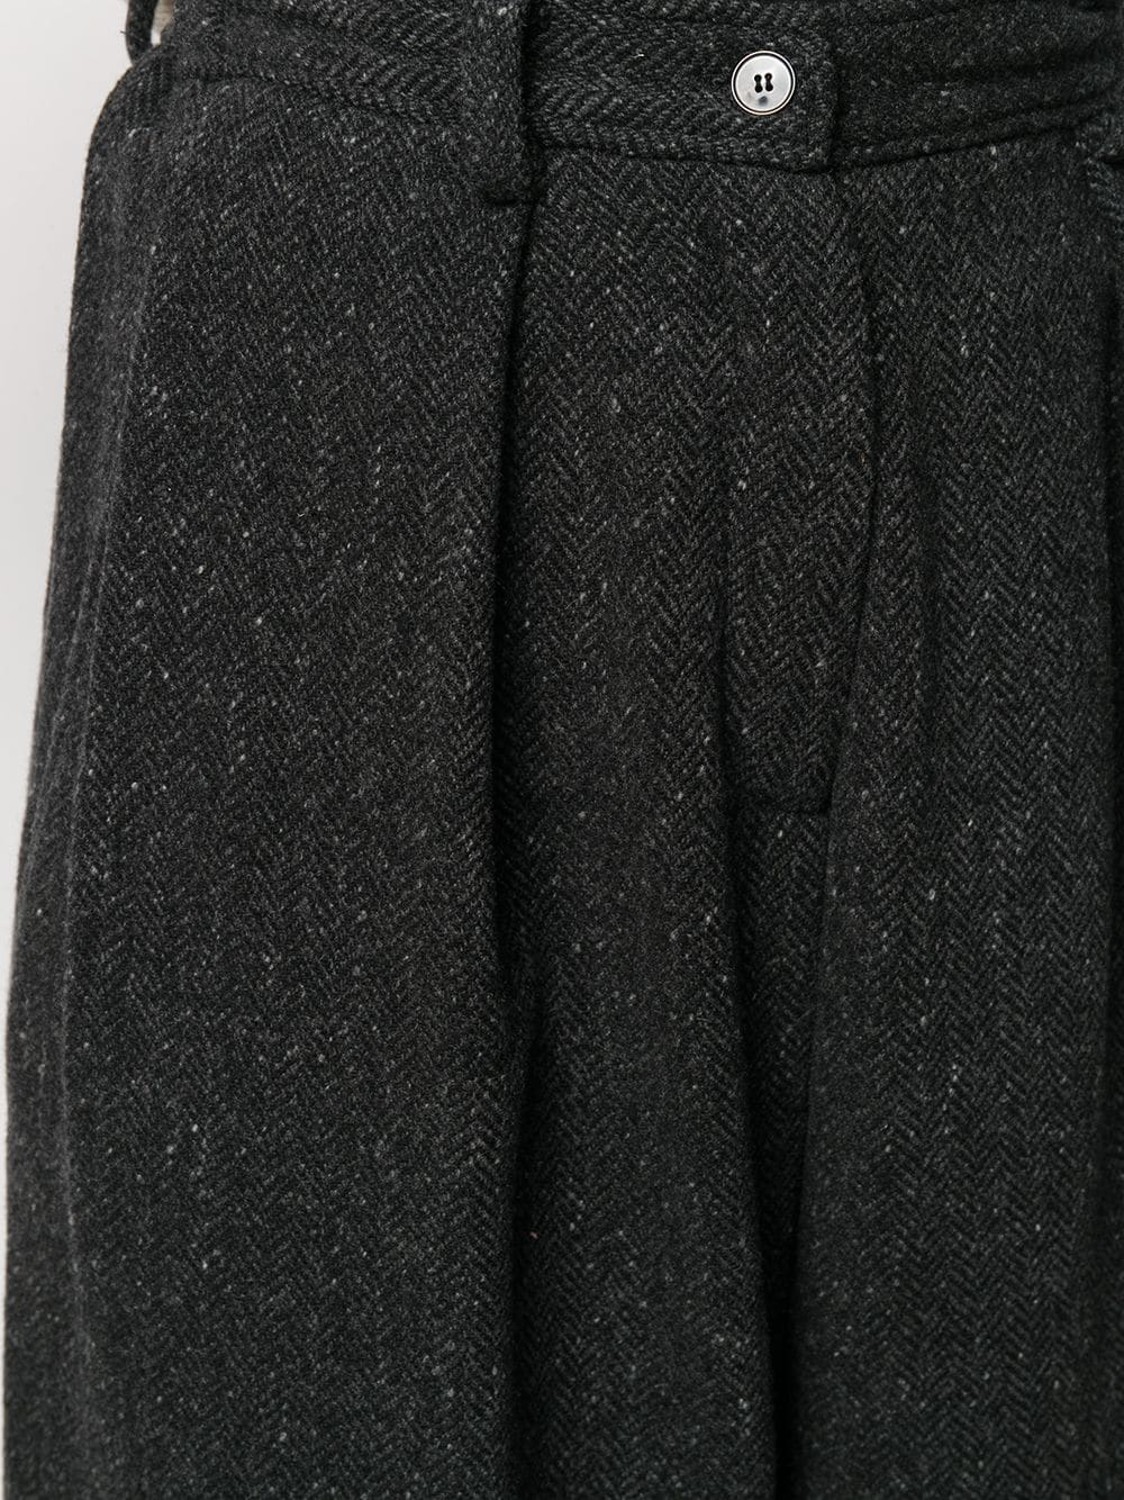 shop Dusan  Pantaloni: Pantaloni Dusan, modello cropped, in cashmere, coulisse in vita, chiusura davanti con bottone e zip, tasche laterali.

Composizione: 100% cashmere. number 1551